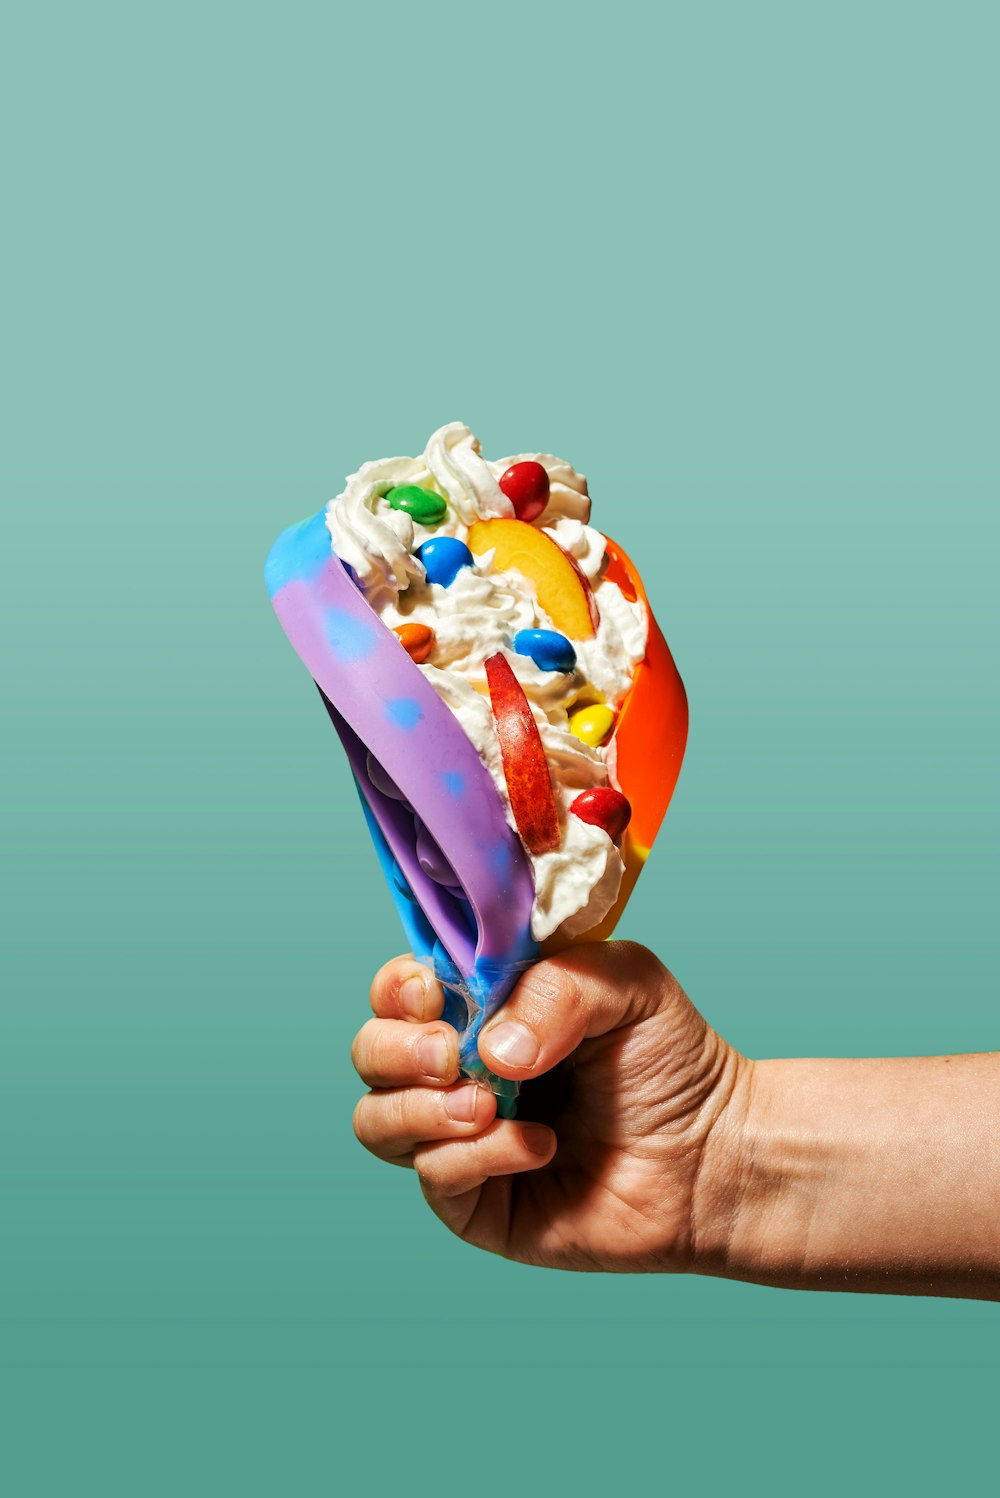 une main tenant une boule de crème glacée avec des garnitures colorées